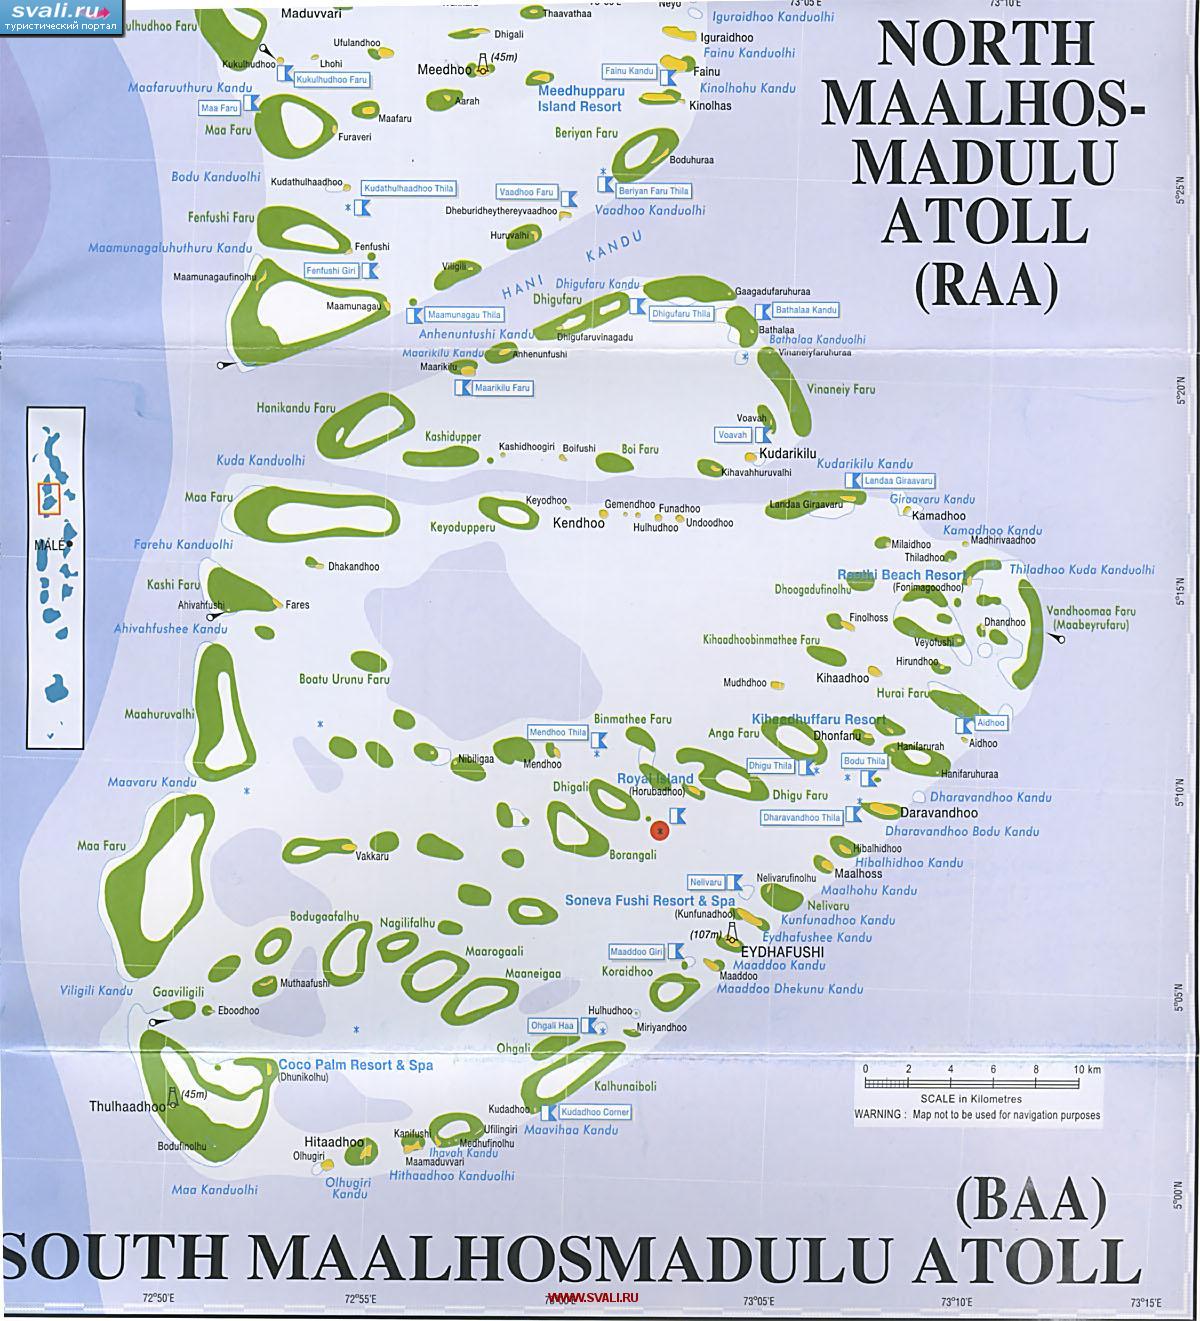   South Maalhosmadulu (Baa)   ().